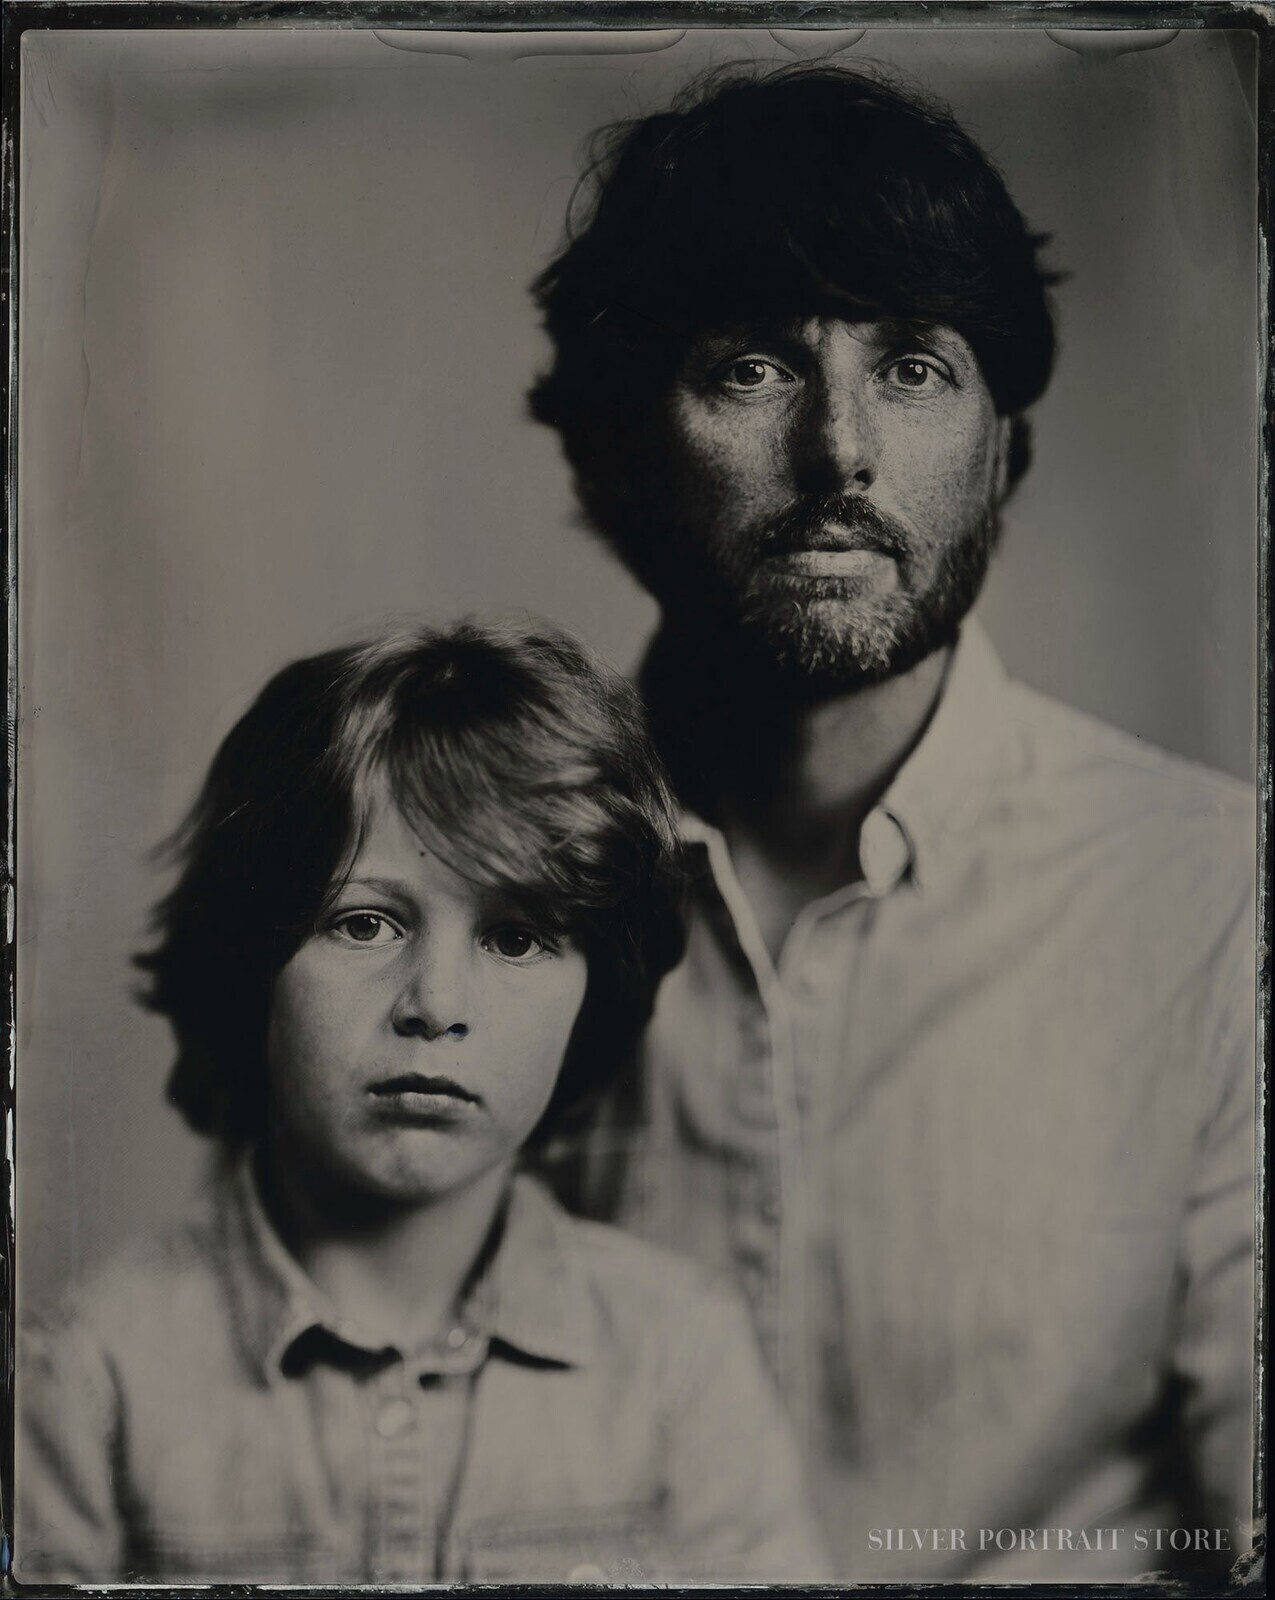 Emiel en Faas 2021-Silver Portrait Store-Wet plate collodion-Tintype 20 x 25 cm.